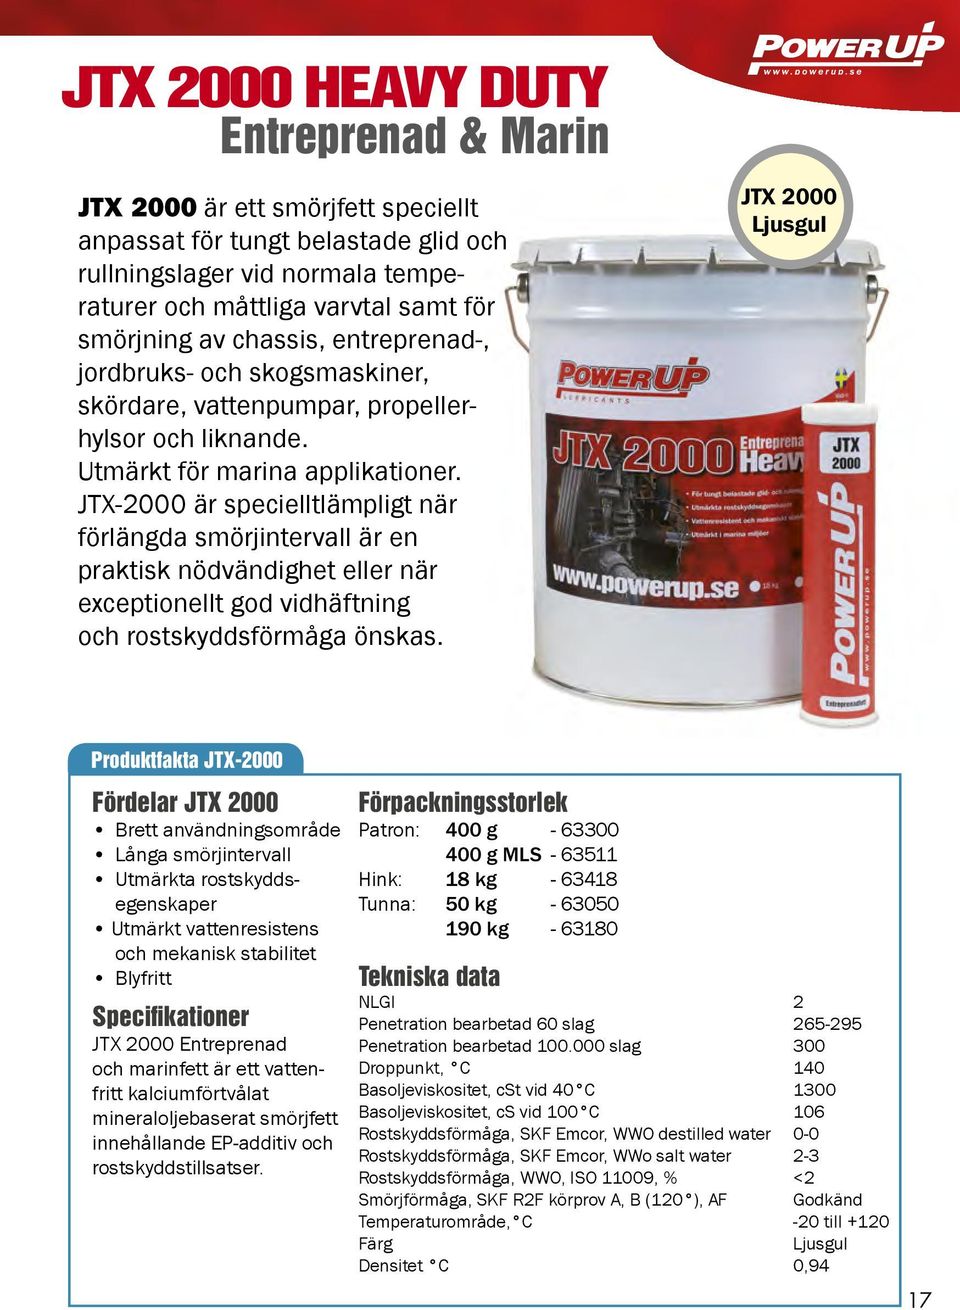 JTX-2000 är specielltlämpligt när förlängda smörjintervall är en praktisk nödvändighet eller när exceptionellt god vidhäftning och rostskyddsförmåga önskas.